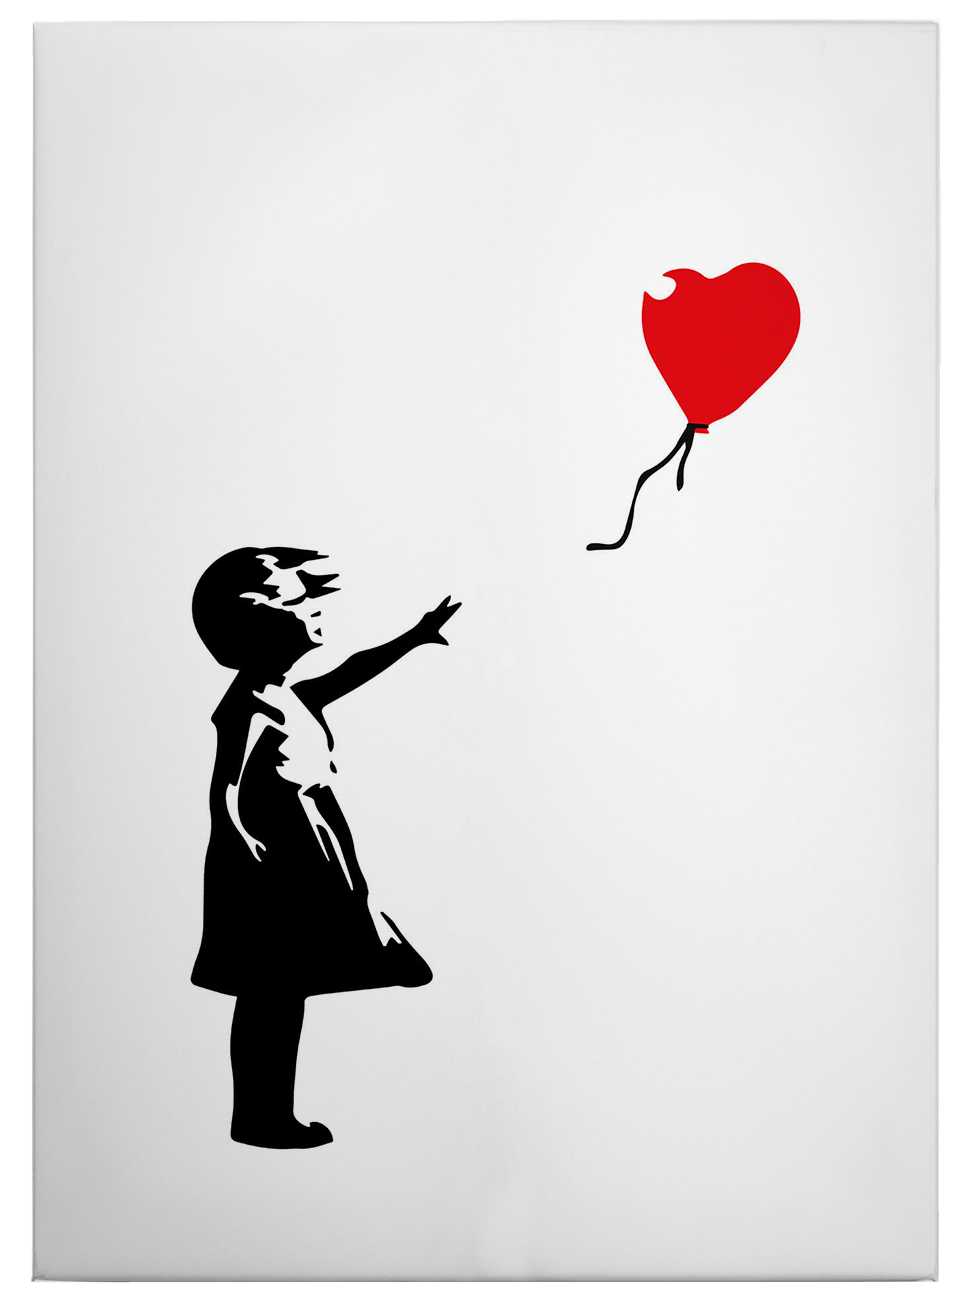             Toile "Fille avec un ballon rouge" de Banksy - 0,50 m x 0,70 m
        